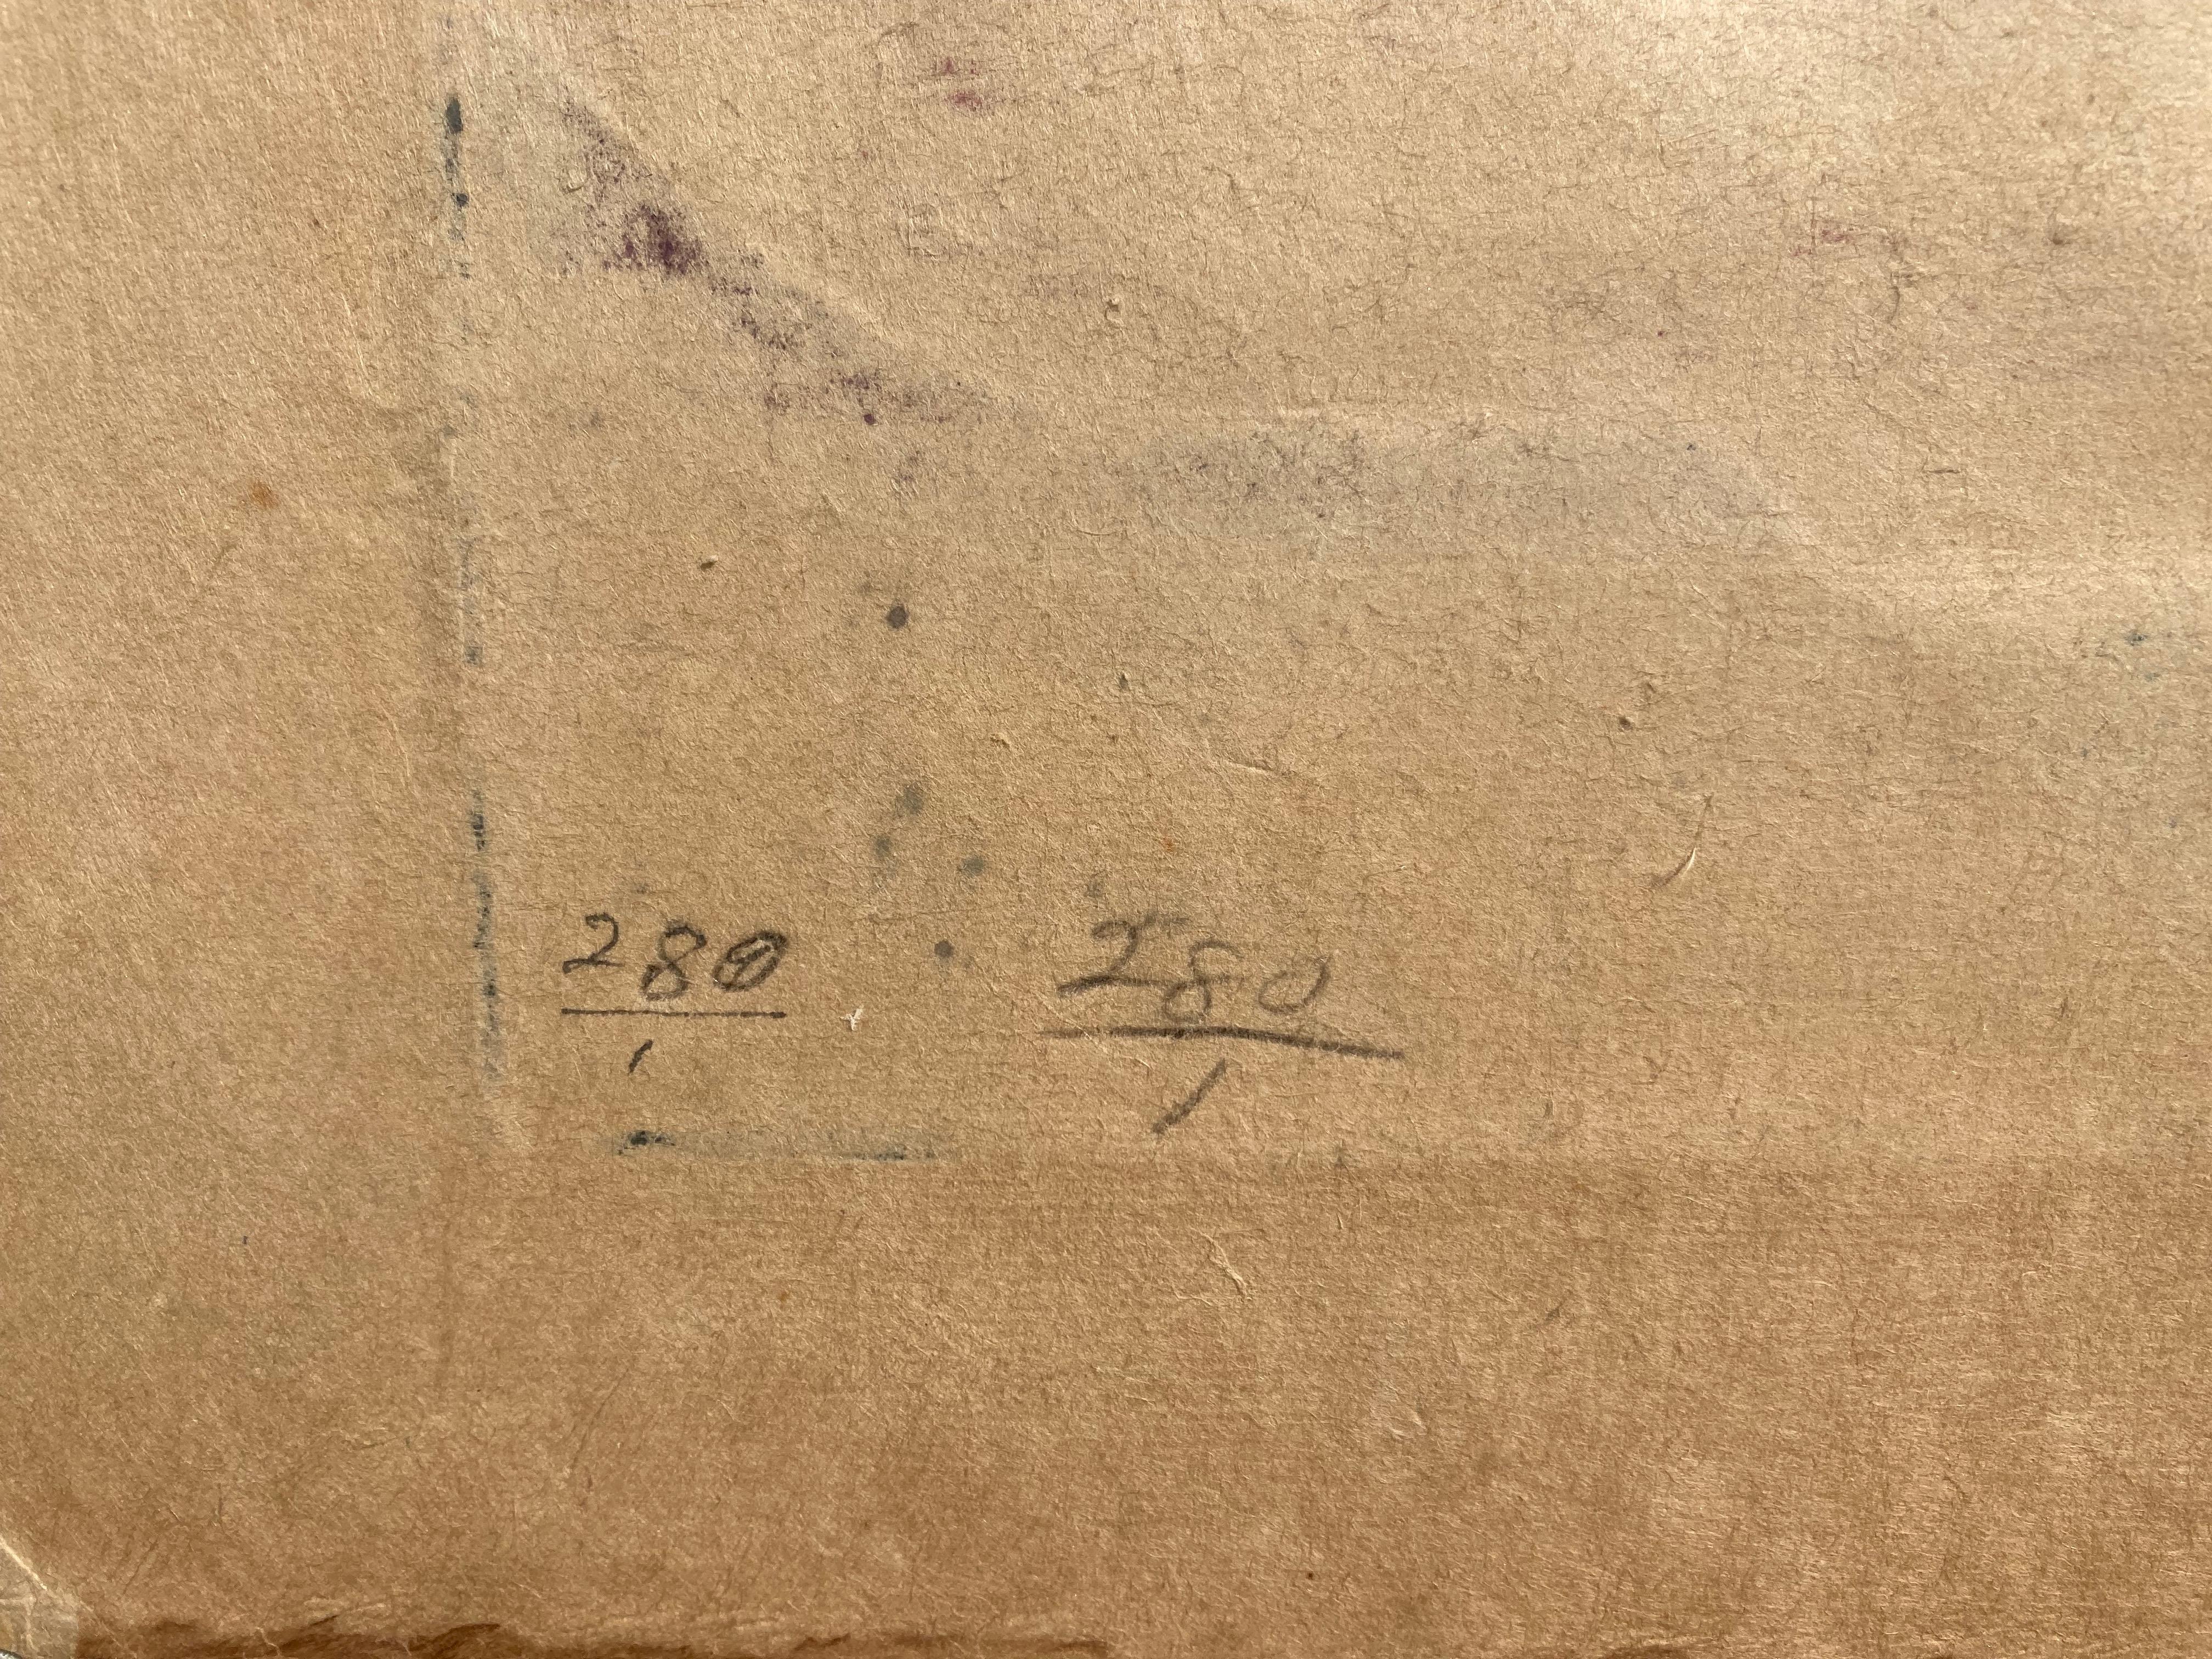 
BLANCHE LAZZELL (1878 - 1956)

PHLOX ÉTOILÉ 1930
Gravure sur bois en couleur selon la méthode Provincetown à un seul bloc. Signé et titré et avec une annotation 
